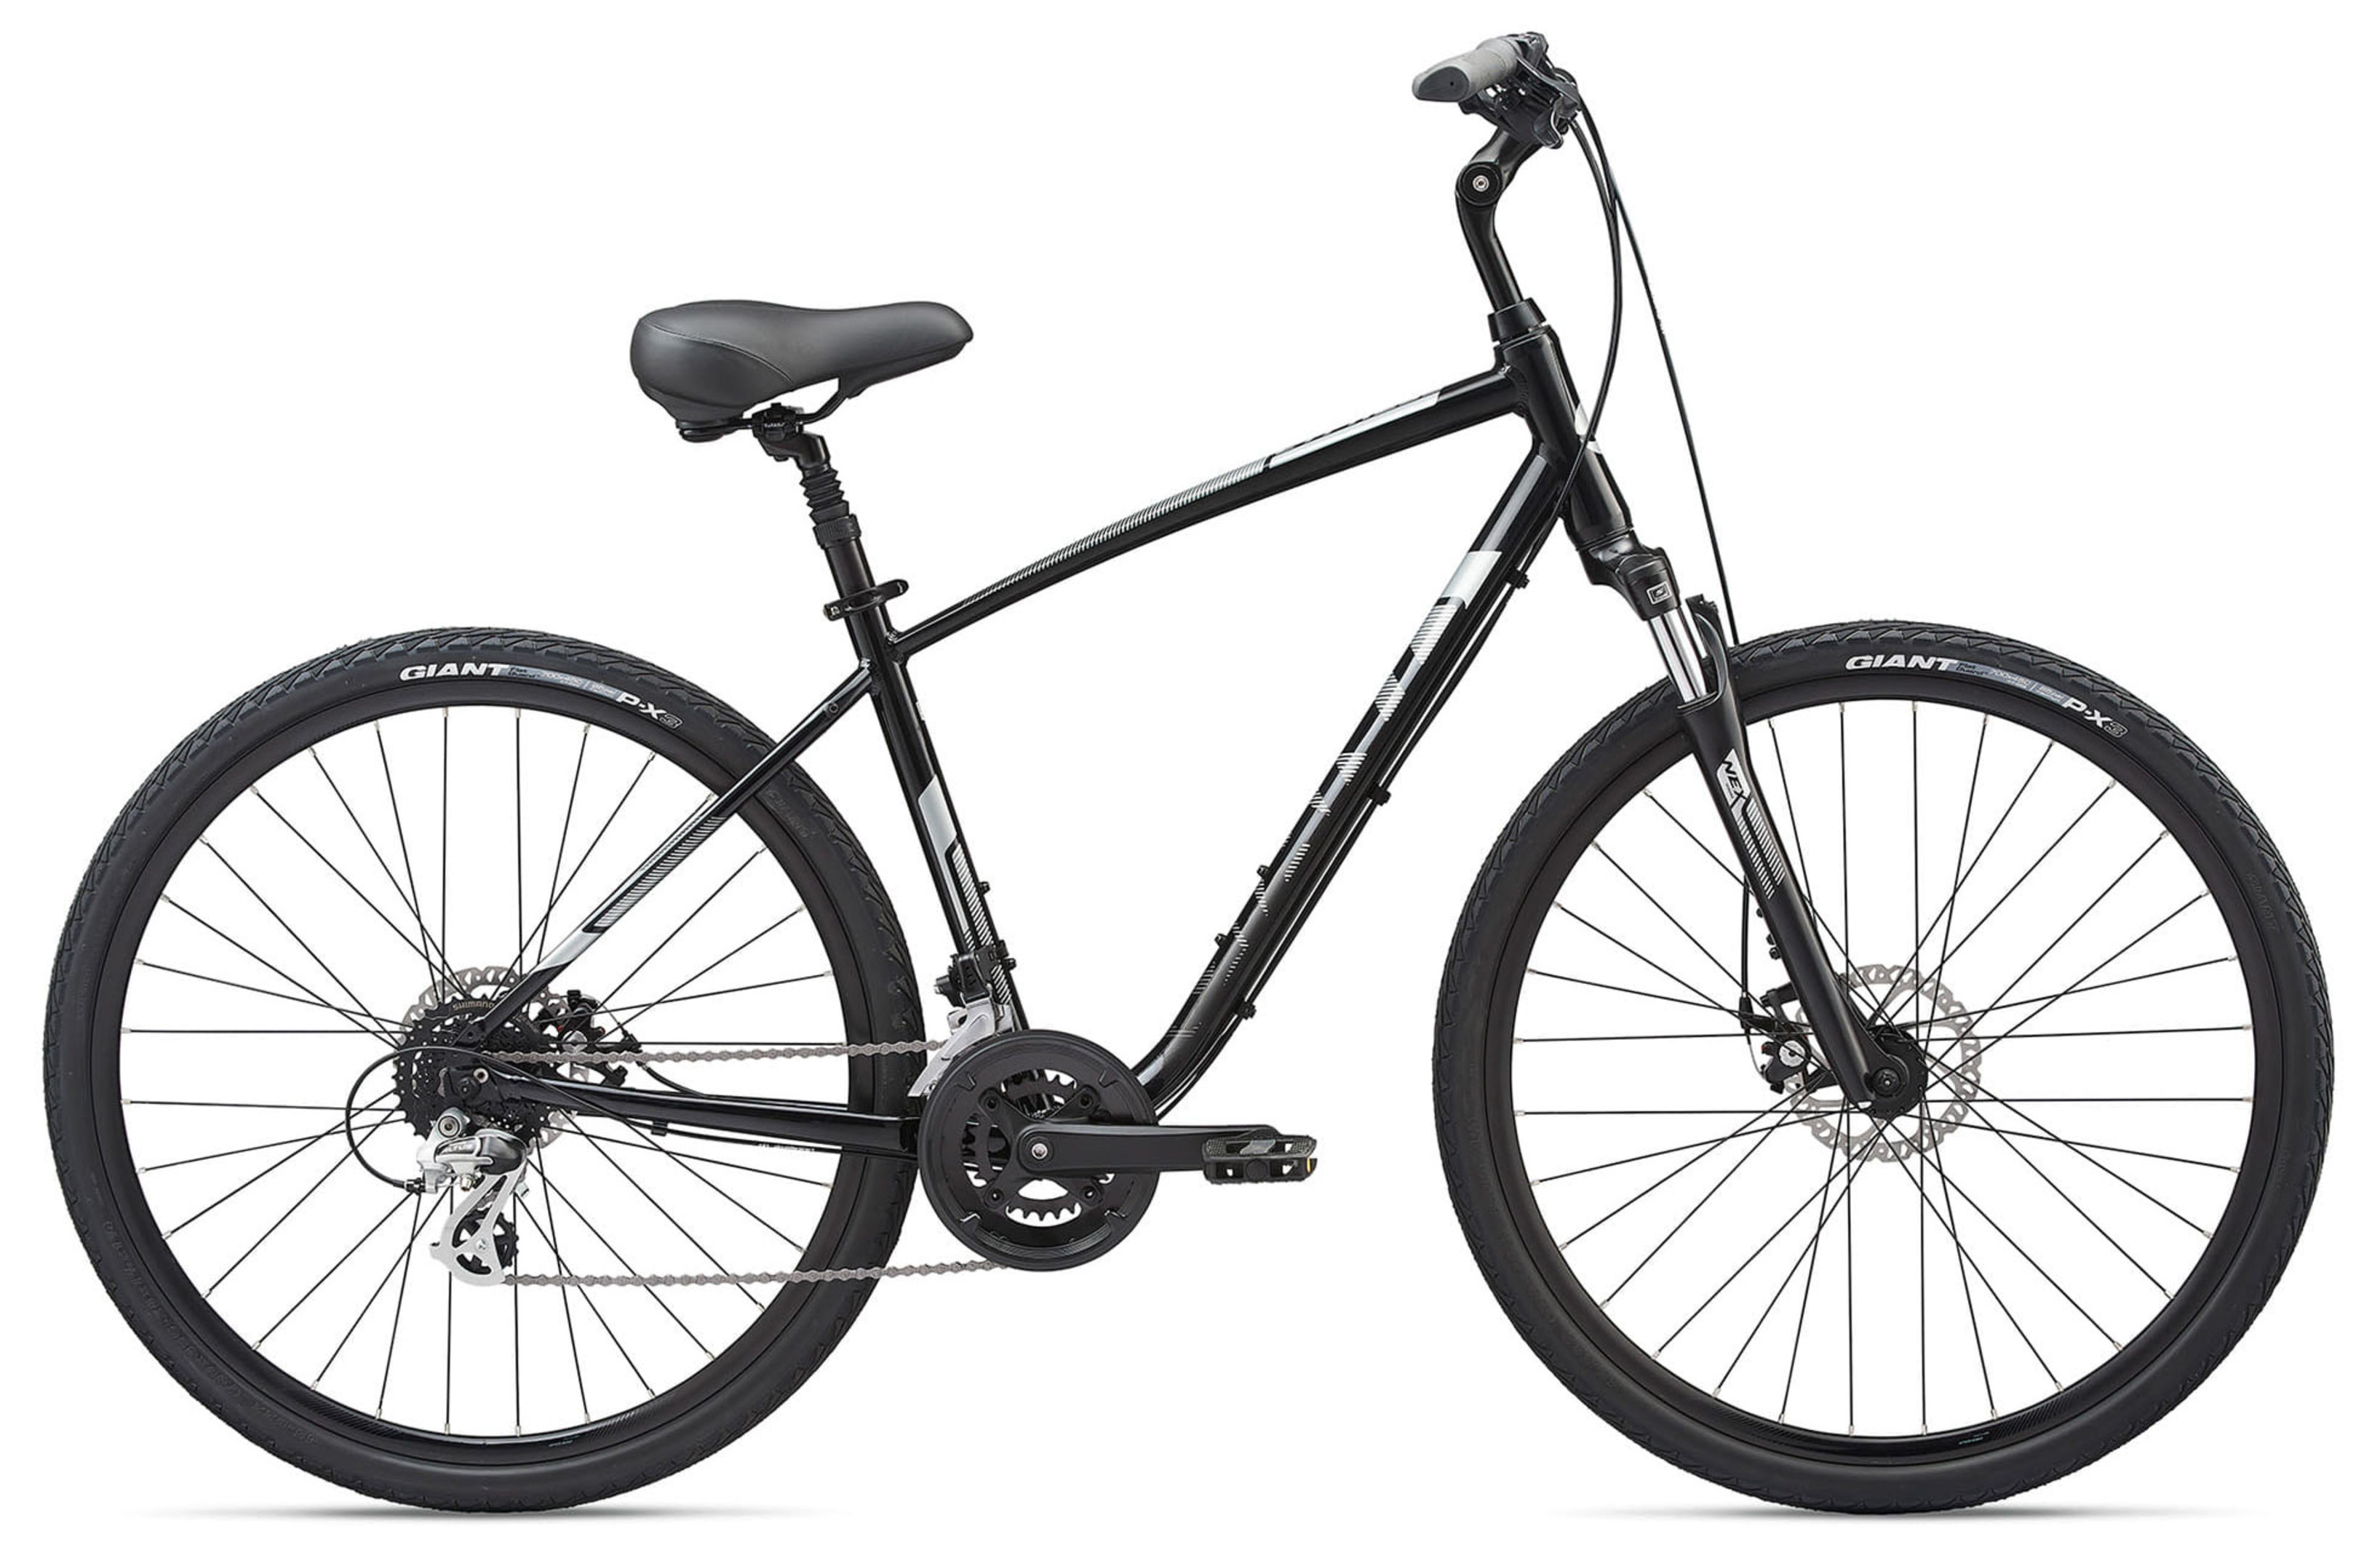  Отзывы о Городском велосипеде Giant Cypress DX (2021) 2021